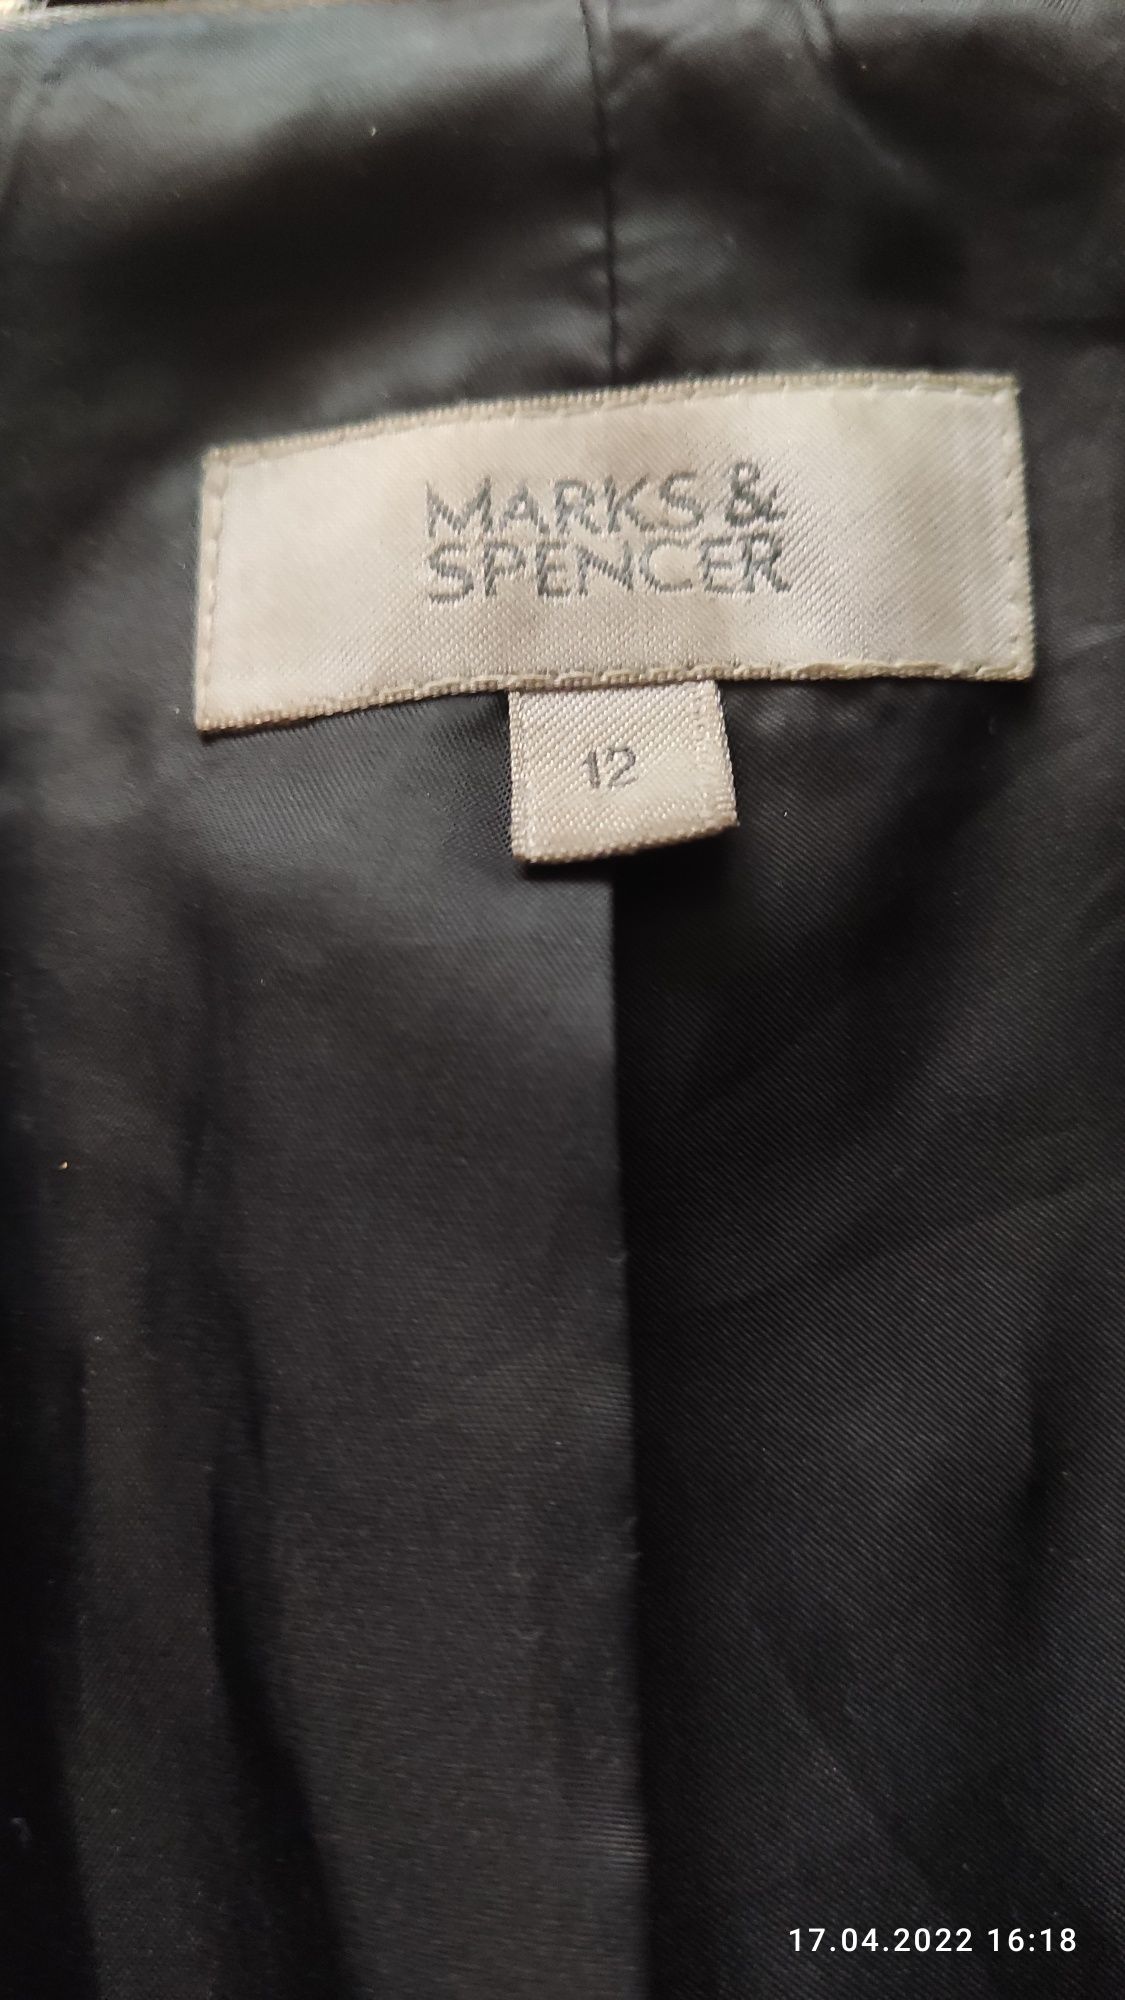 Полупальто женское, размер 12, Marks&Spencer.